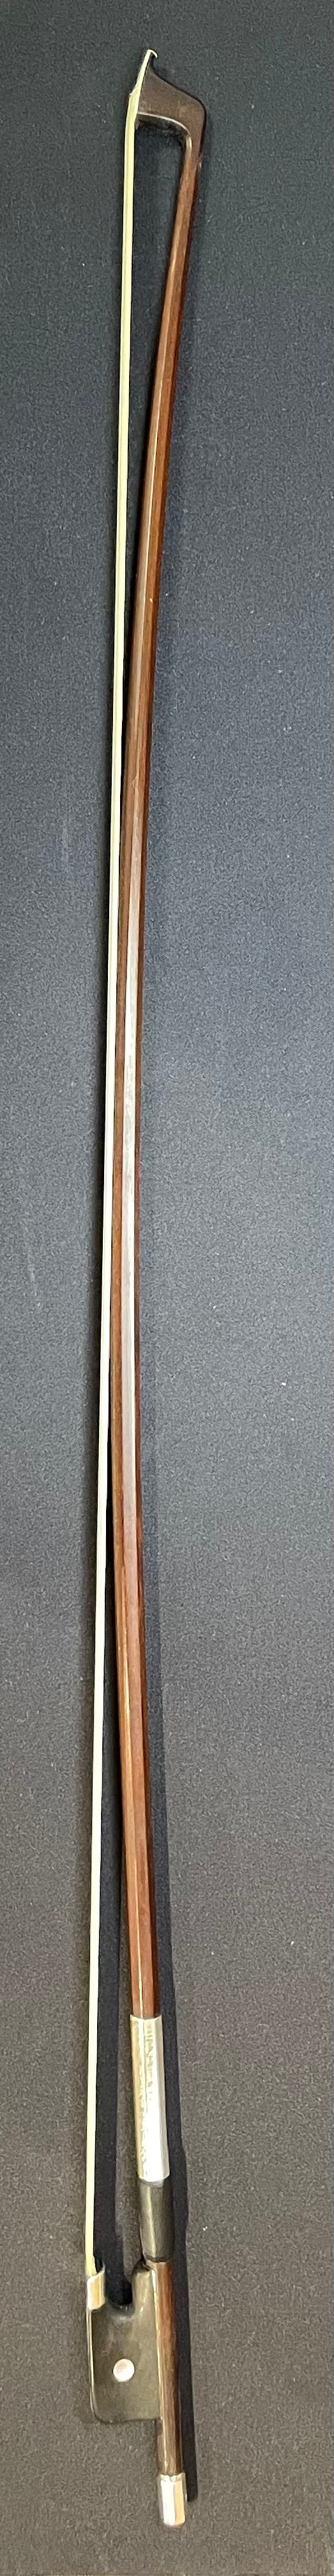 Full Size Viola Bow - LS Wood Model